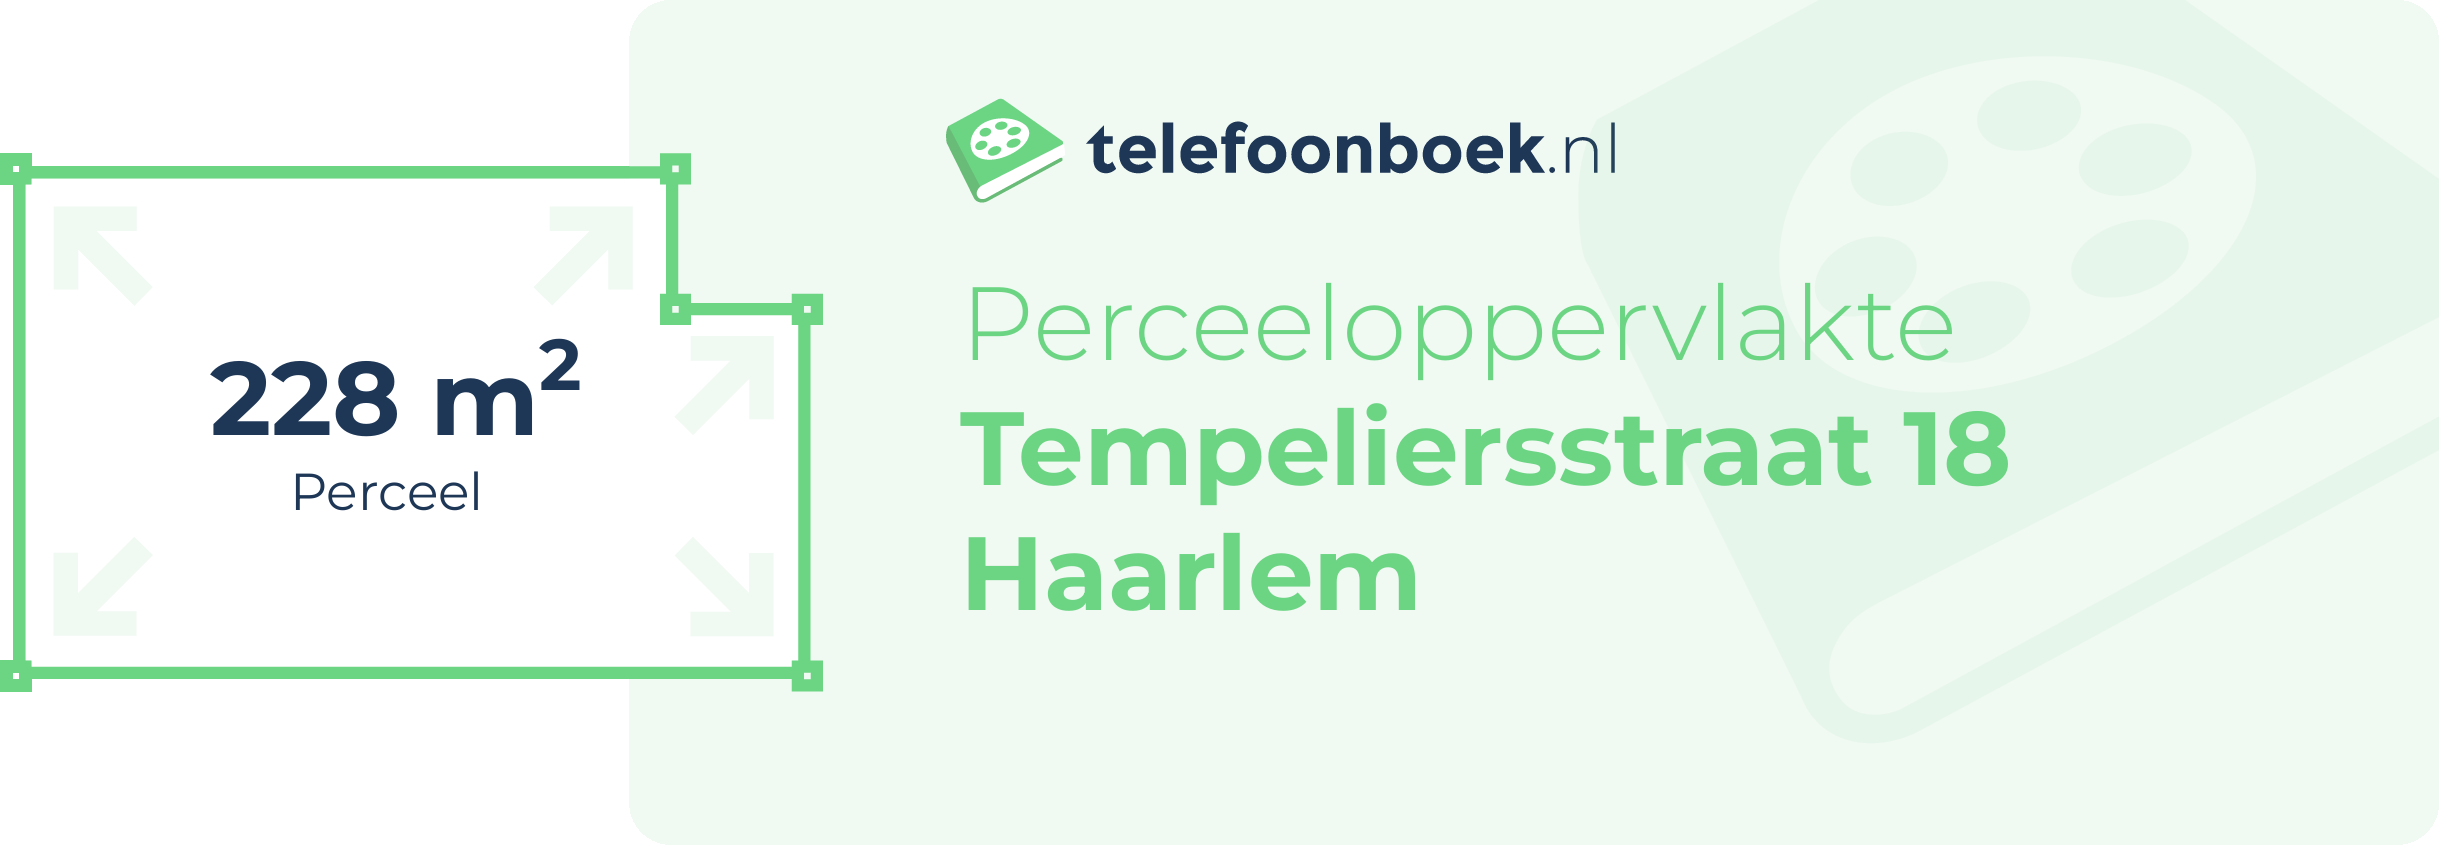 Perceeloppervlakte Tempeliersstraat 18 Haarlem